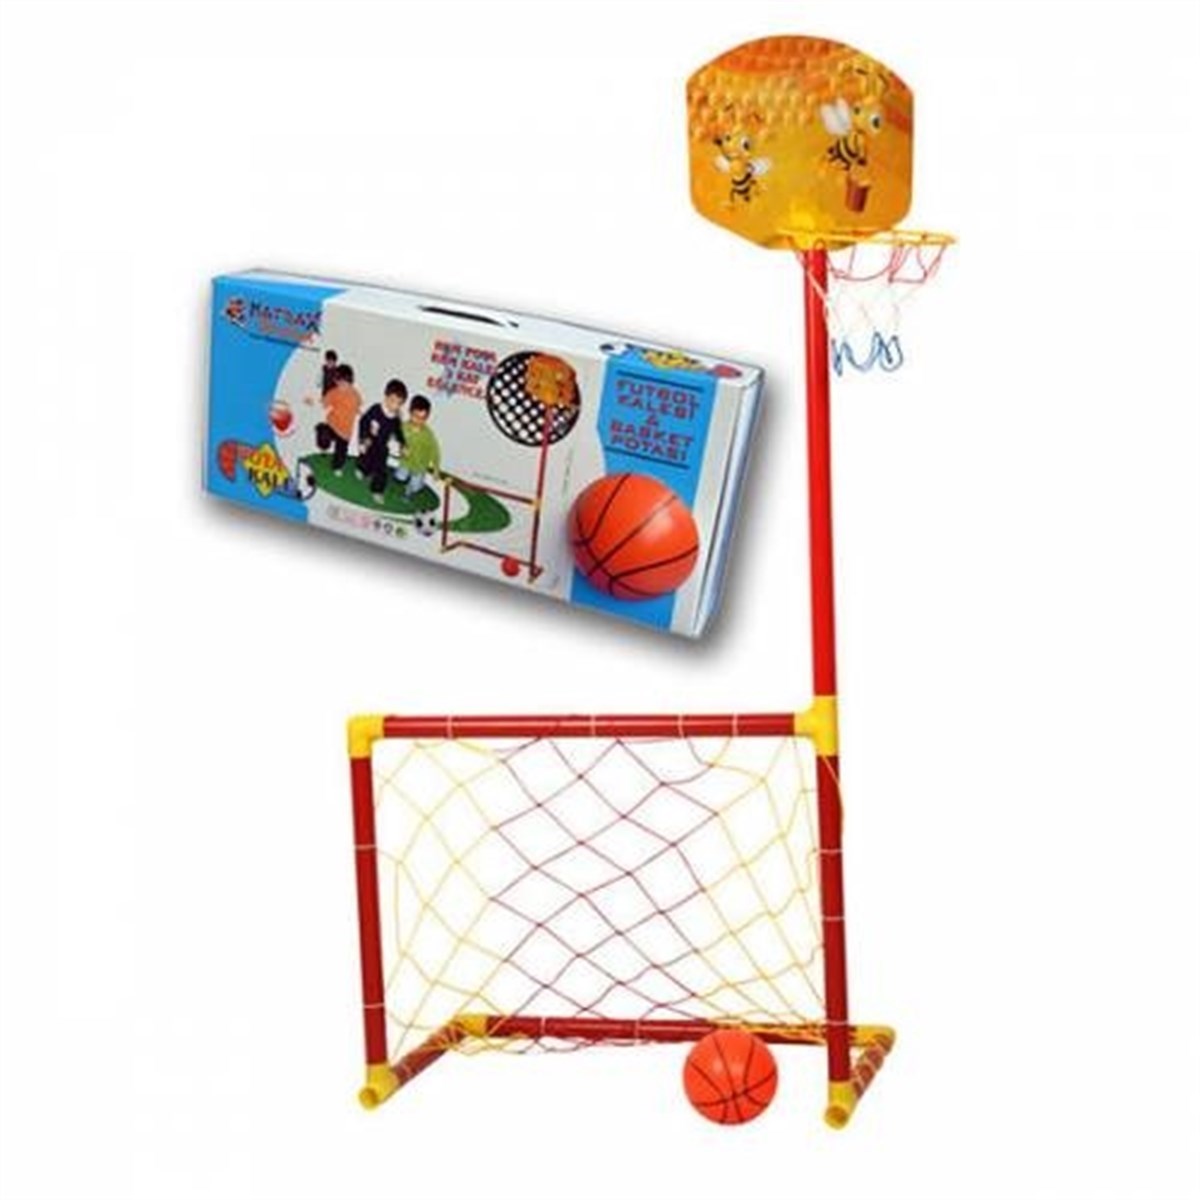 Matrax Oyuncak Portatif Kale ve Basket Potası (2si 1 arada) Fiyatı ve  Özellikleri